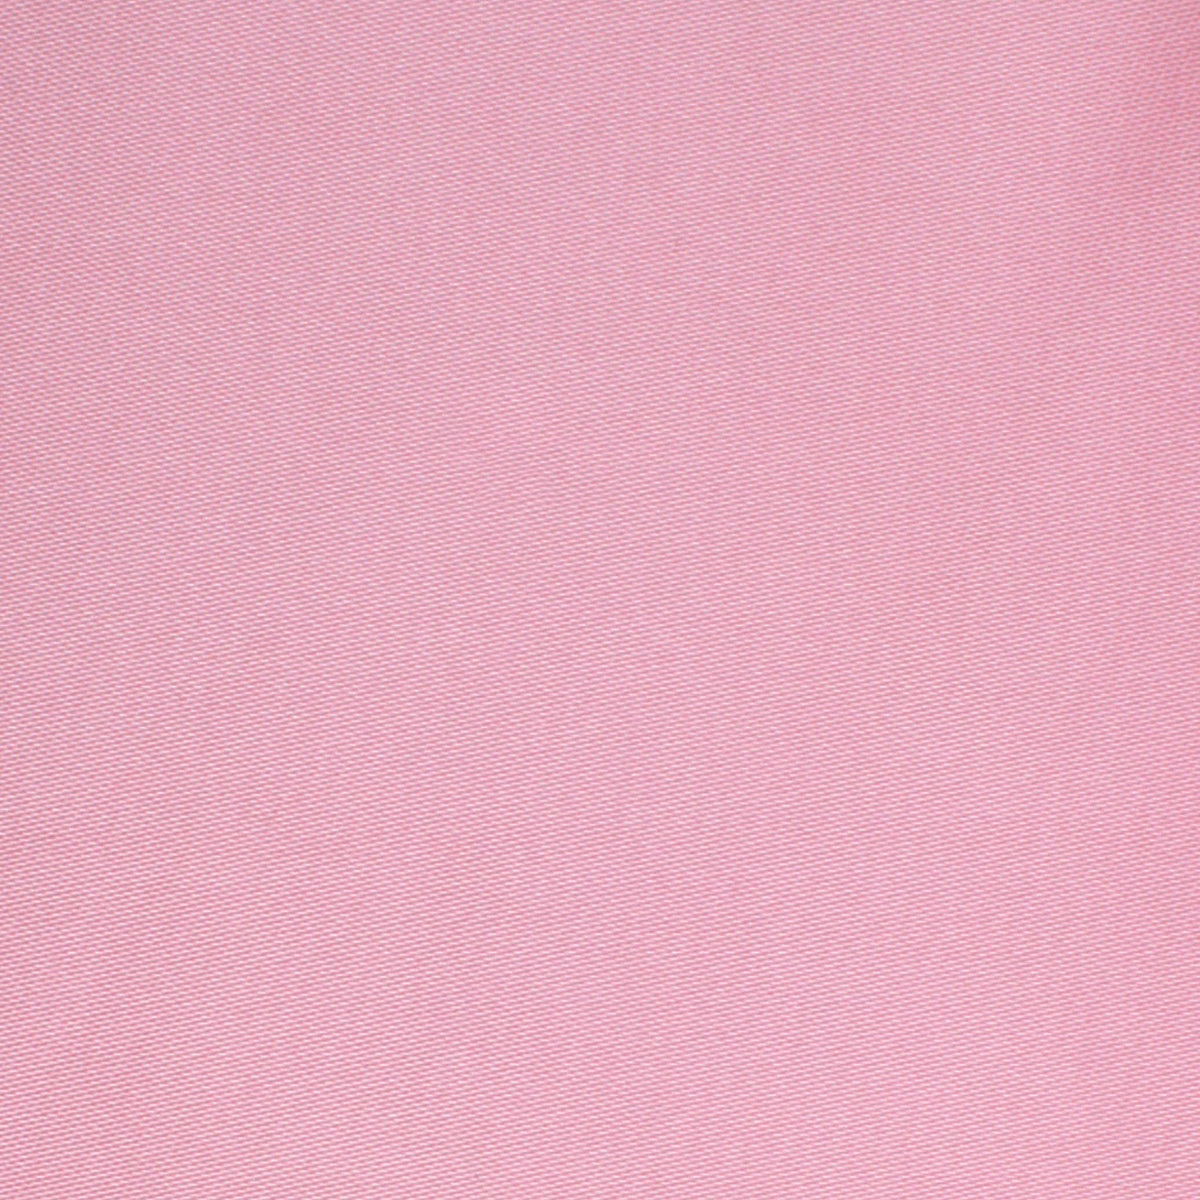 Rose Pink Satin Skinny Tie Fabric